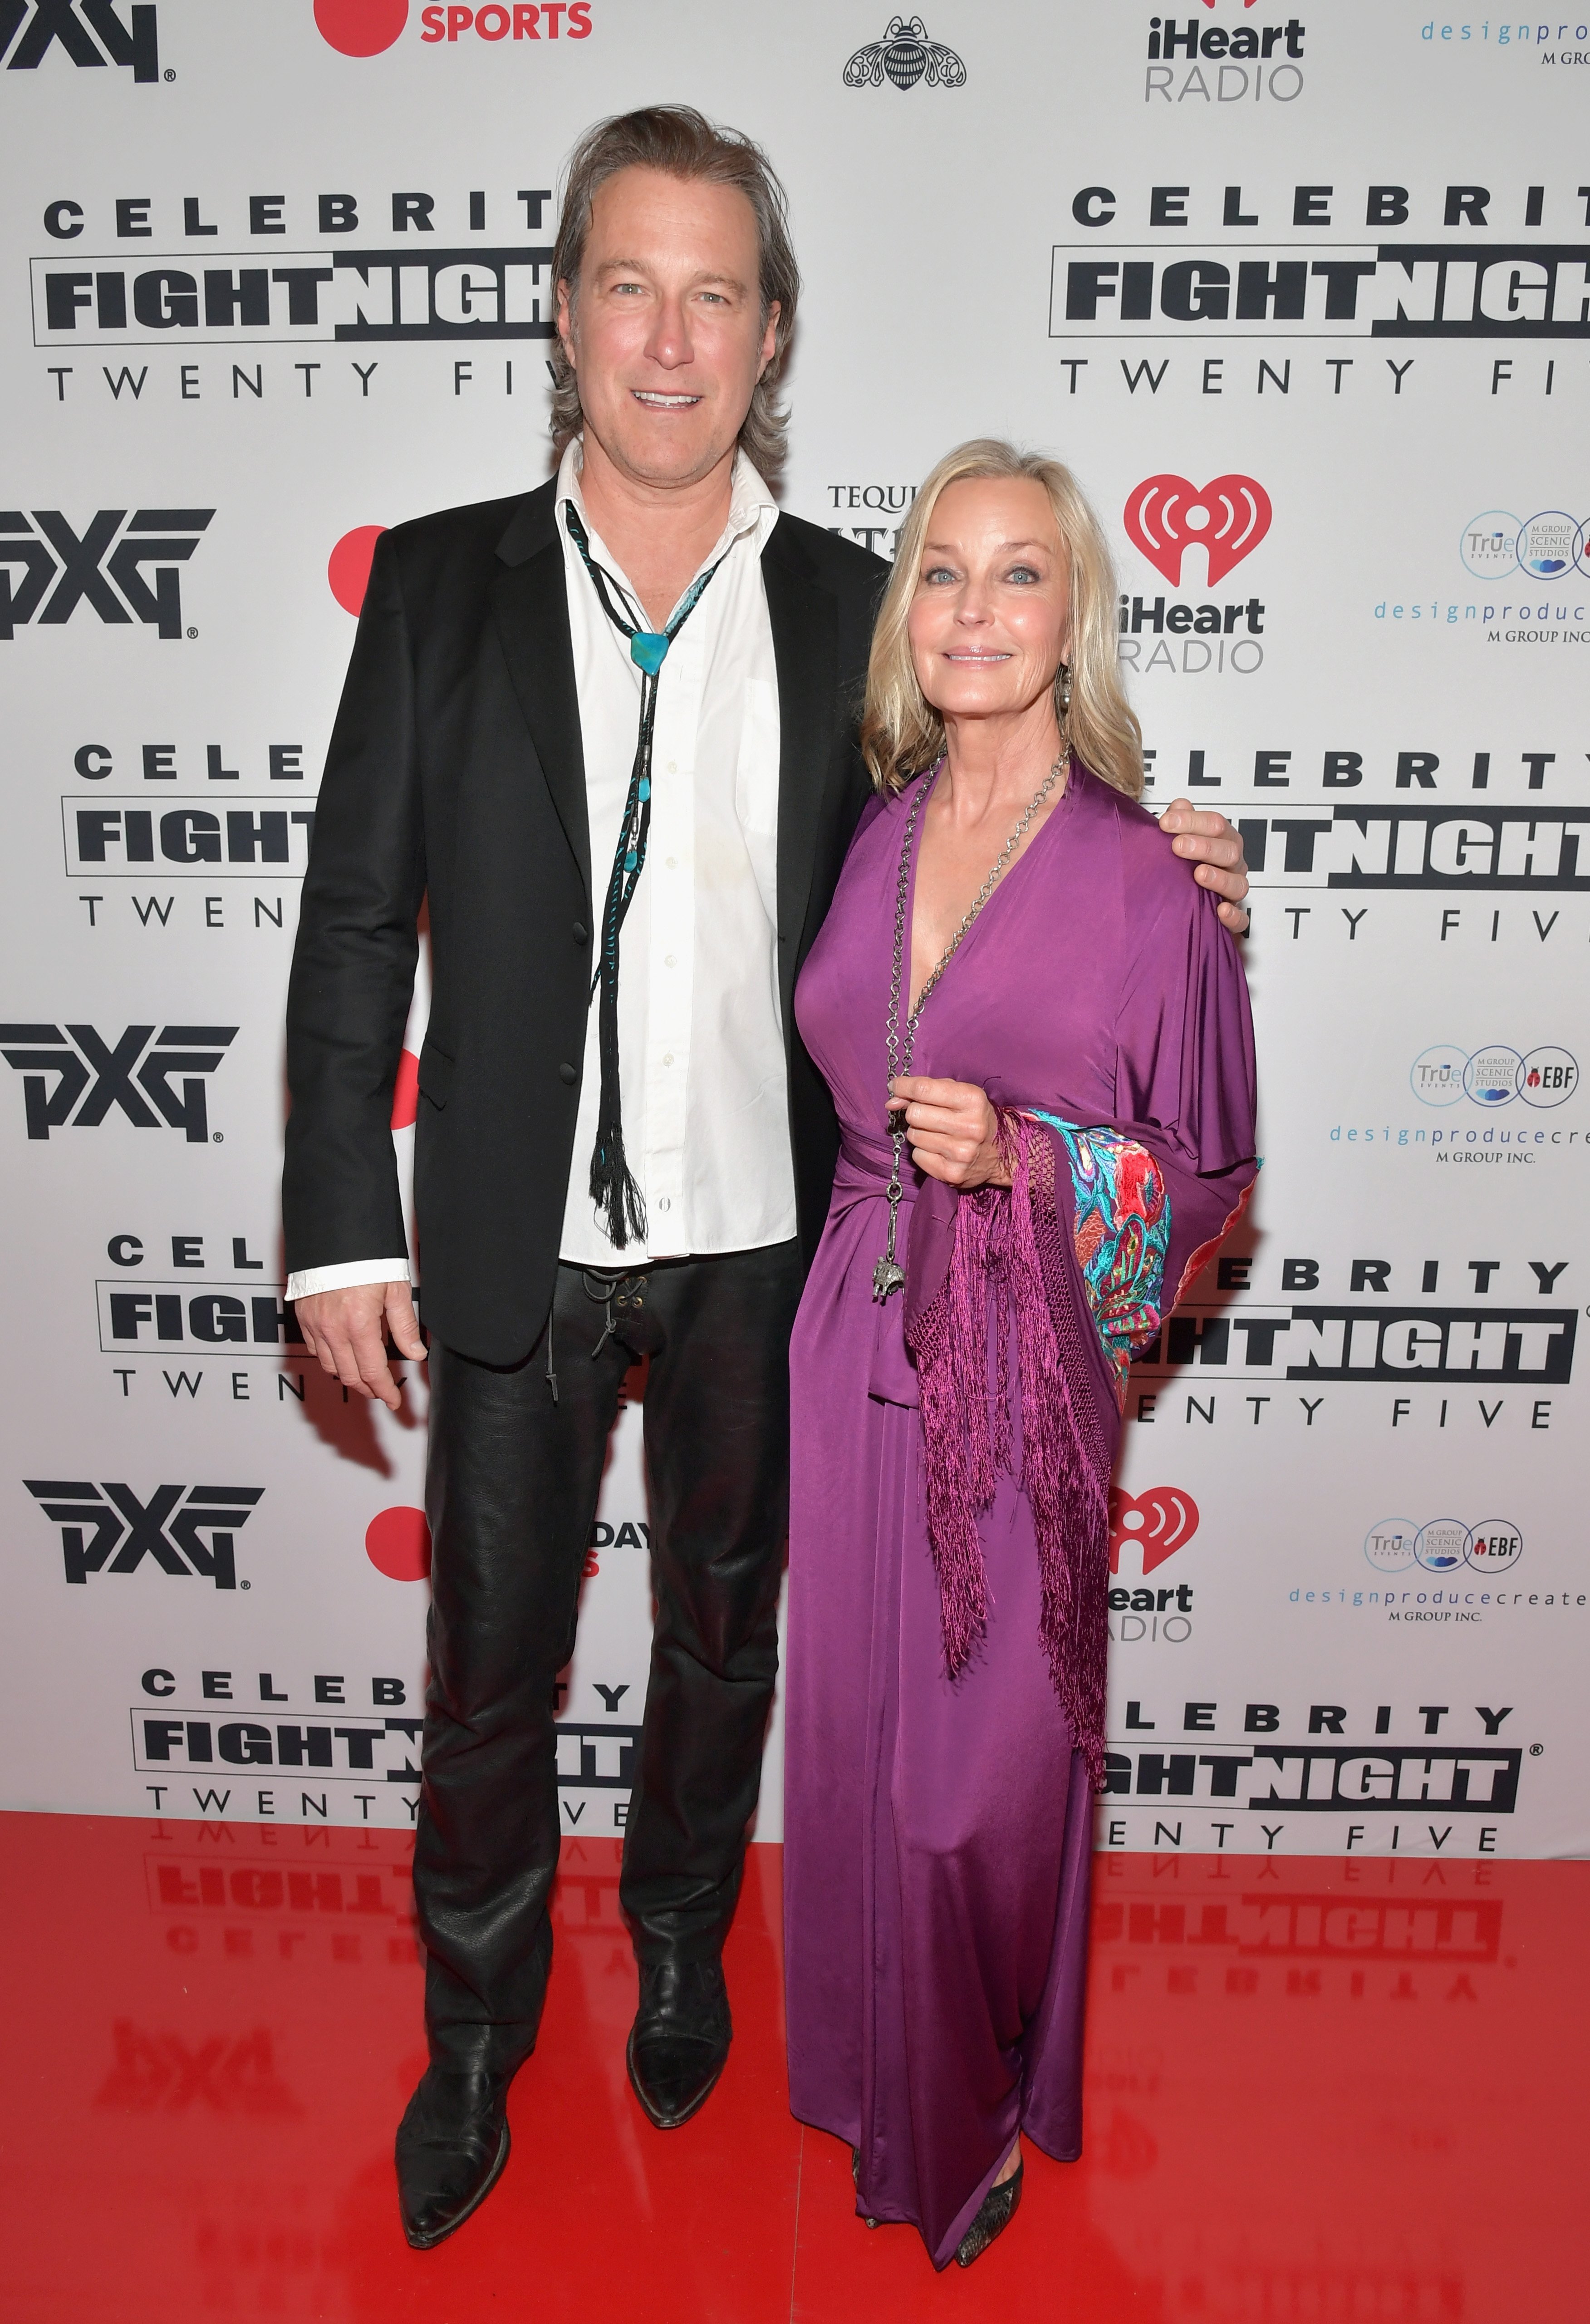 Ο ohn Corbett και ο Bo Derek παρευρίσκονται στο Celebrity Fight Night XXV στις 22 Μαρτίου 2019 στο Phoenix της Αριζόνα |  Πηγή: Getty Images